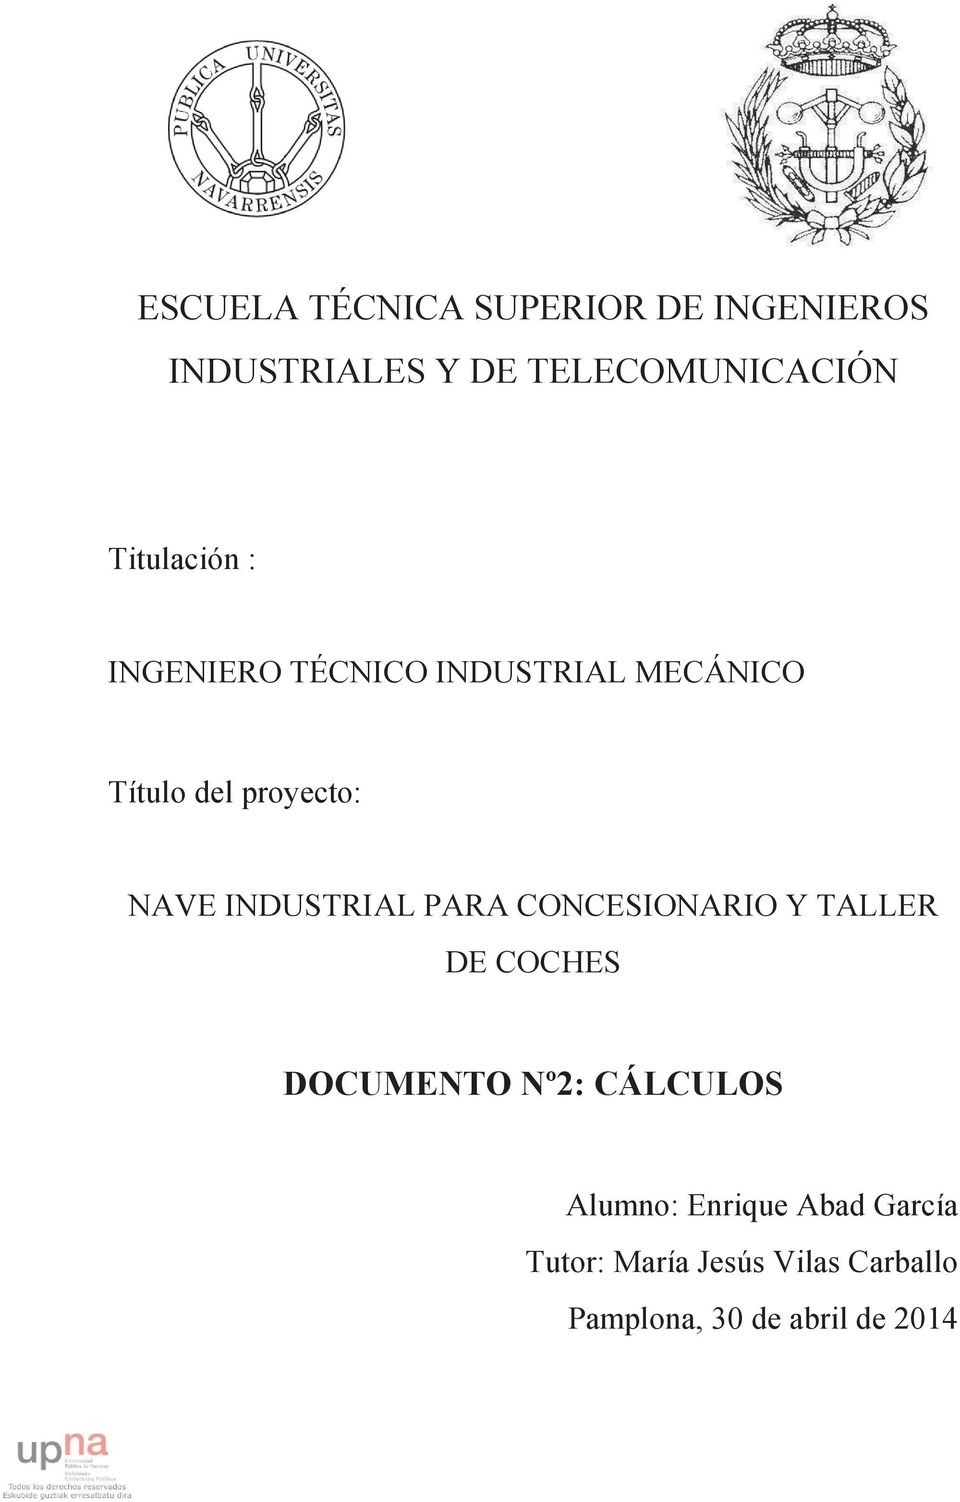 INDUSTRIAL PARA CONCESIONARIO Y TALLER DE COCHES DOCUMENTO Nº2: CÁLCULOS